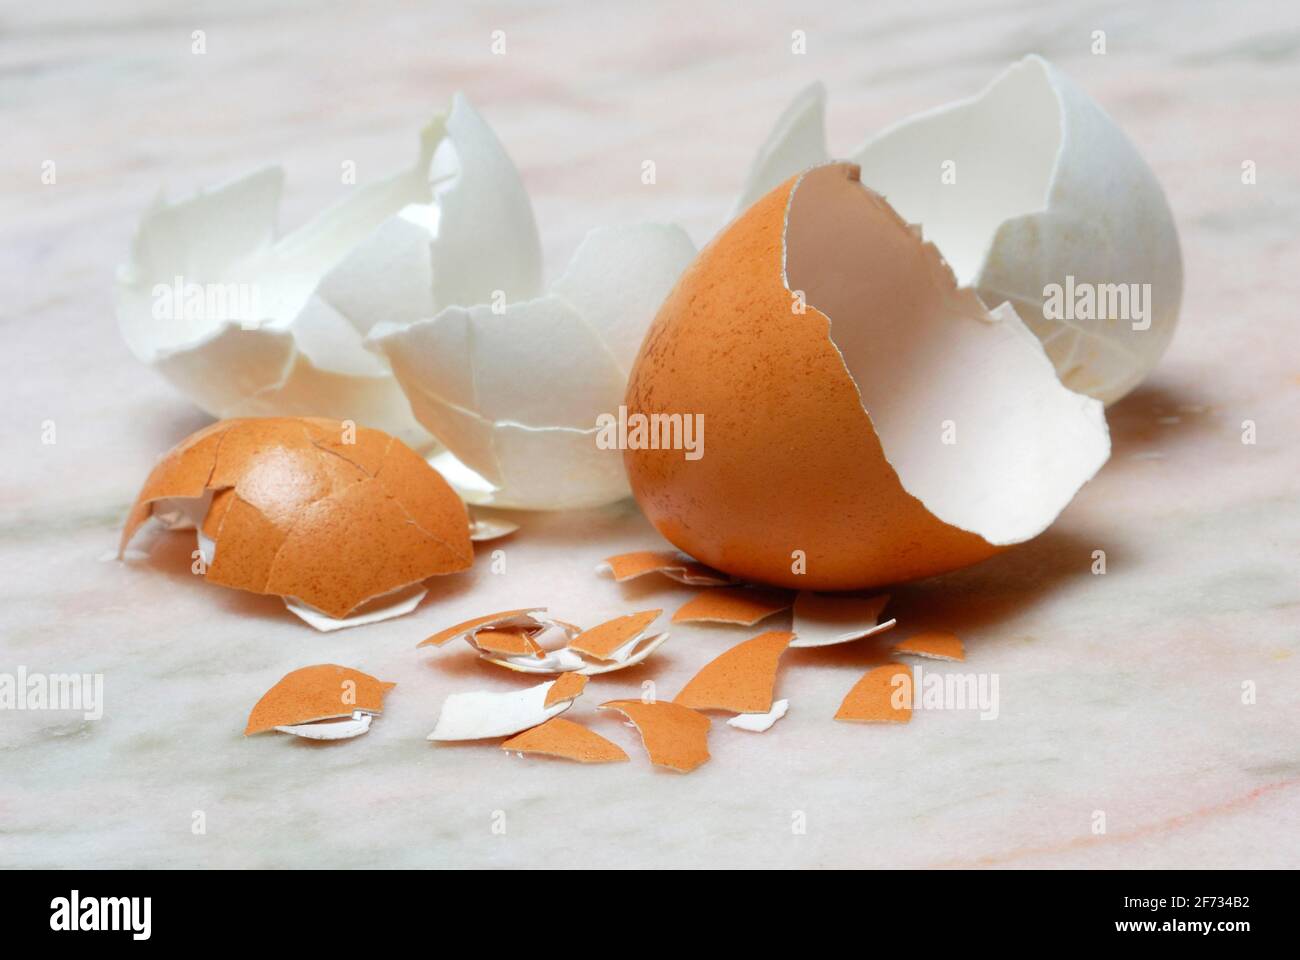 Gusci d'uovo marroni e bianchi, uovo di gallina, uova di gallina, guscio d'uovo Foto Stock